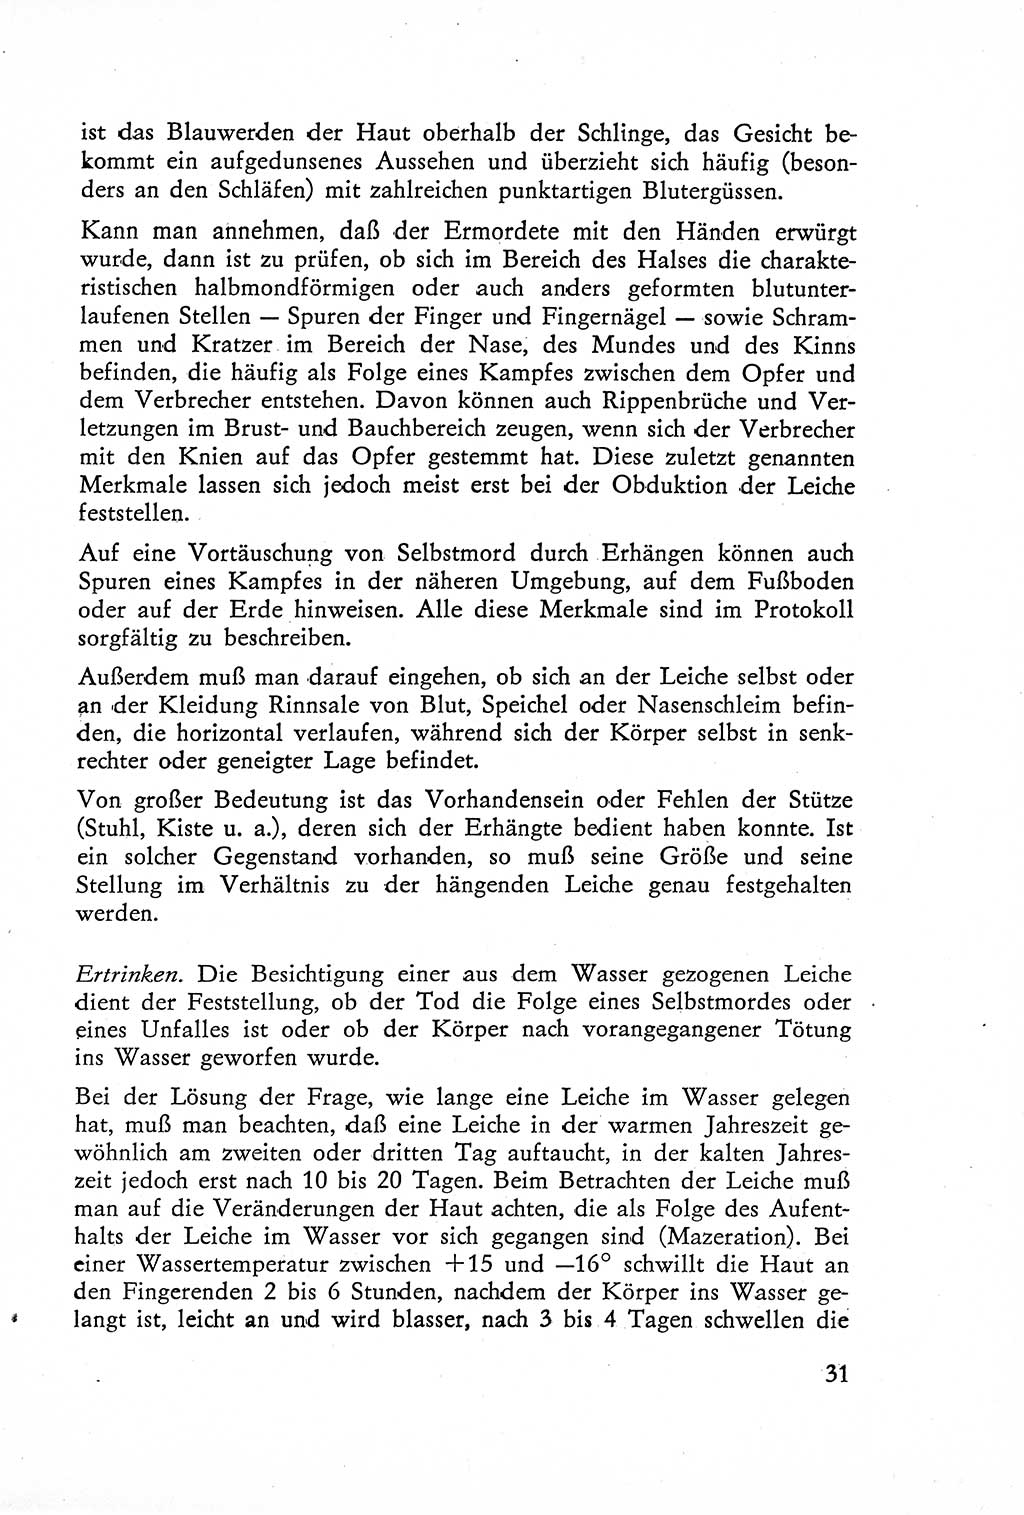 Die Untersuchung einzelner Verbrechensarten [Deutsche Demokratische Republik (DDR)] 1960, Seite 31 (Unters. Verbr.-Art. DDR 1960, S. 31)